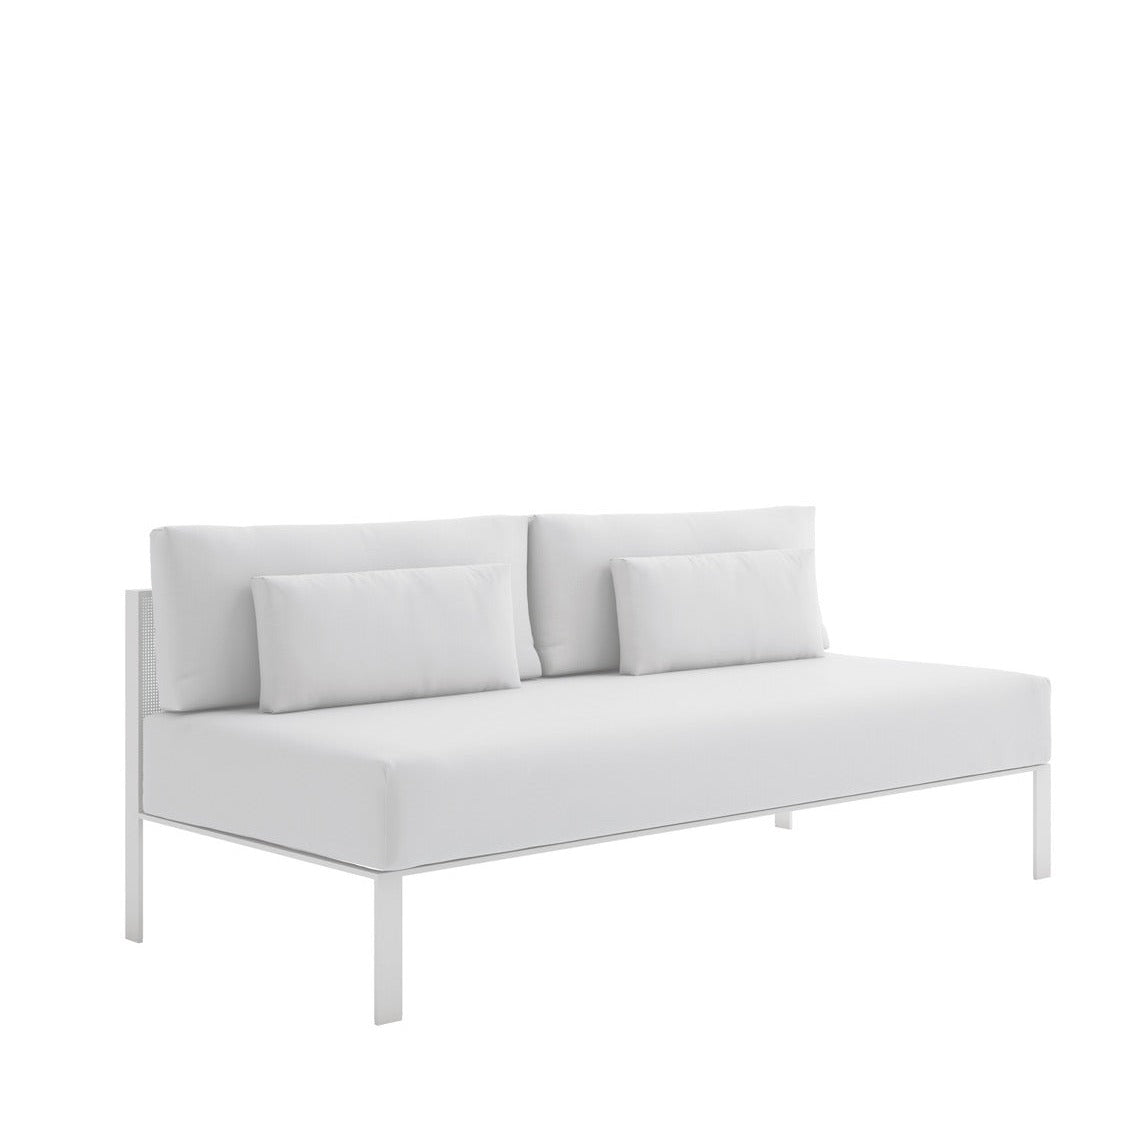 Gandia Blasco Solanas sofa without armrests Sectional 4